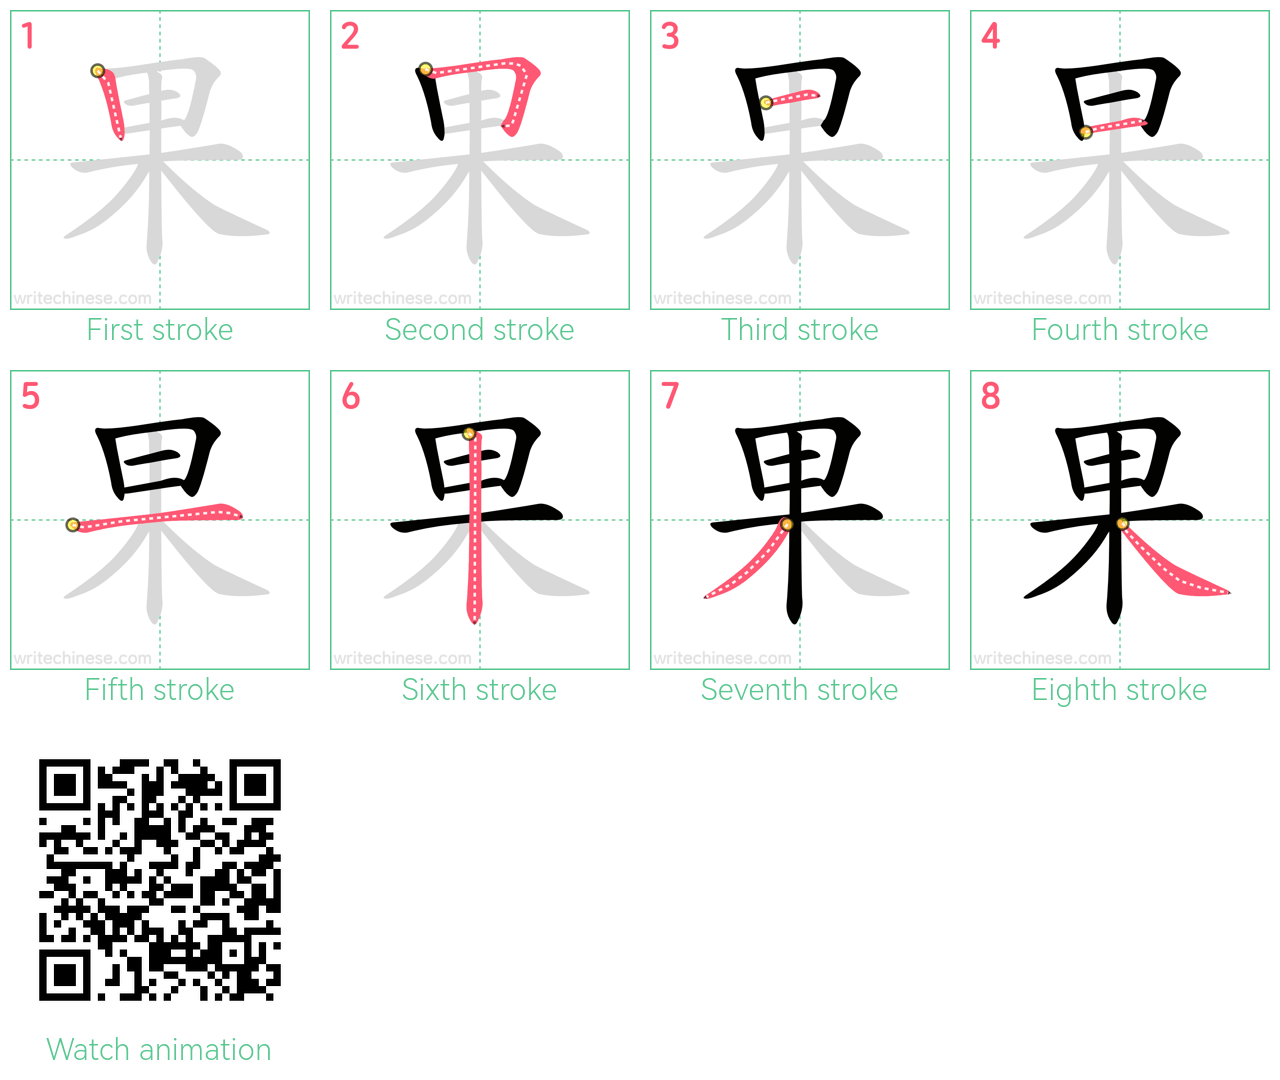 果 step-by-step stroke order diagrams